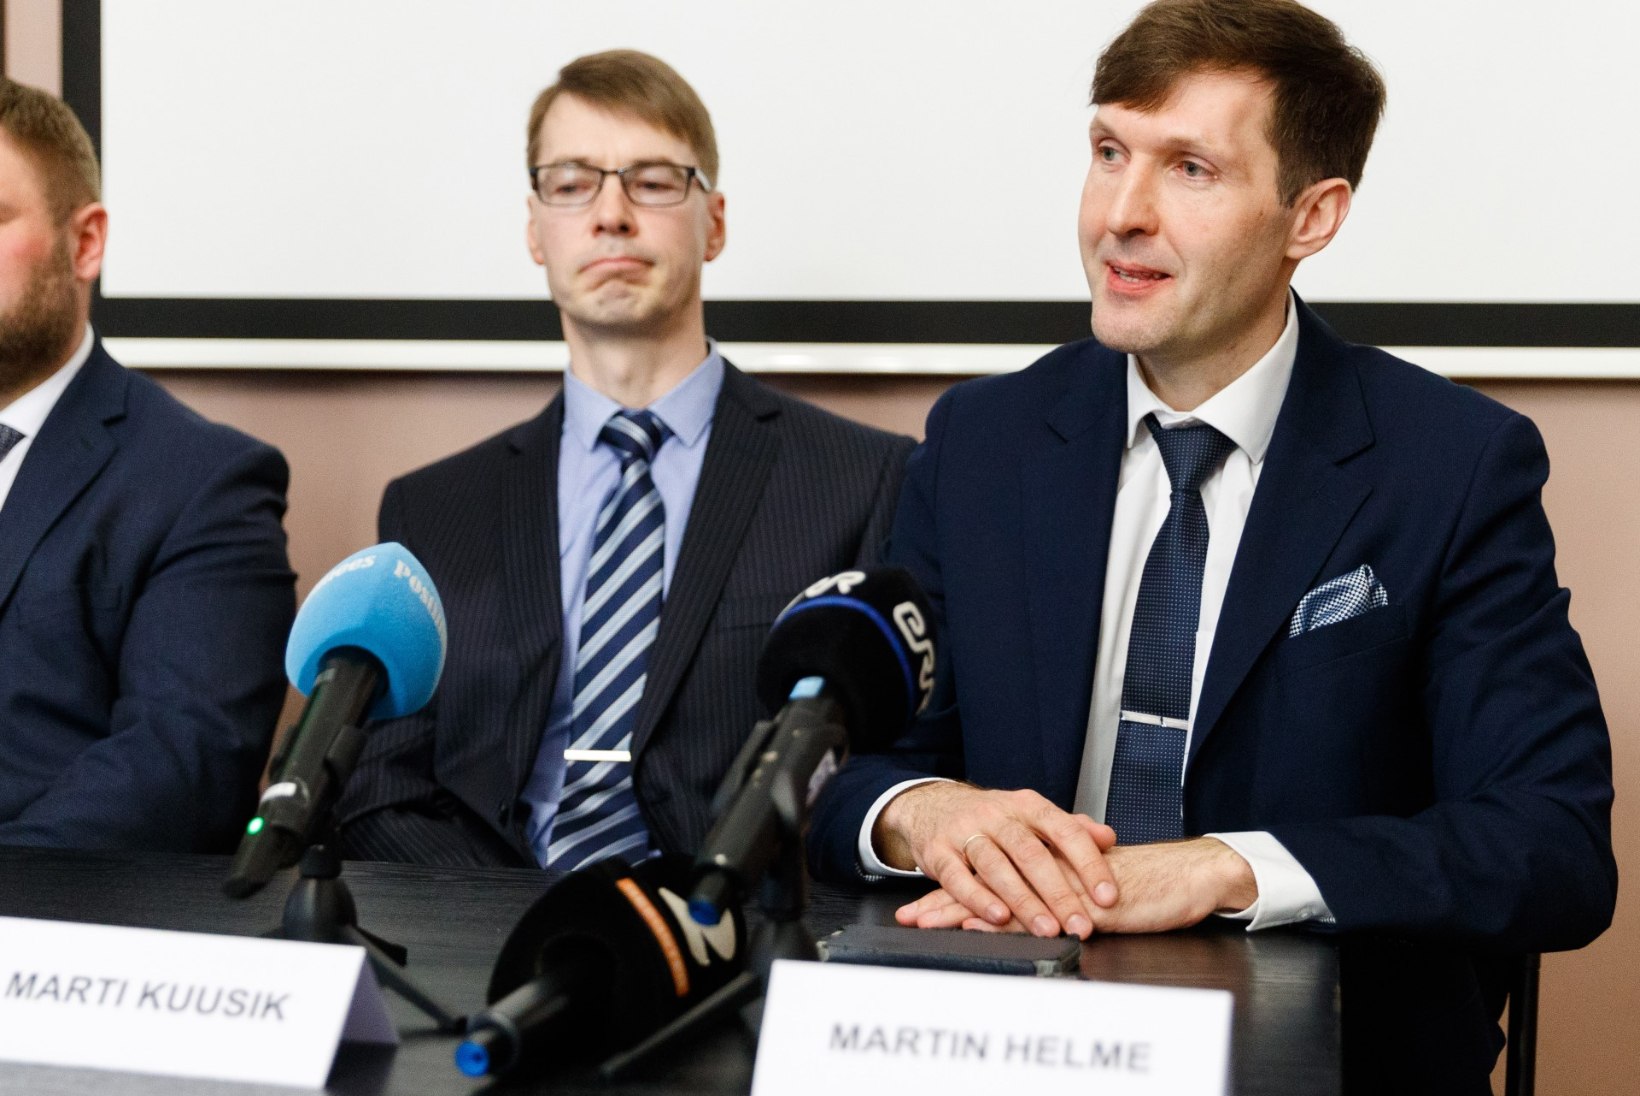 Riik ei pea Marti Kuusiku kohtuasjas Martin Helme tunnistajaks kutsumist vajalikuks